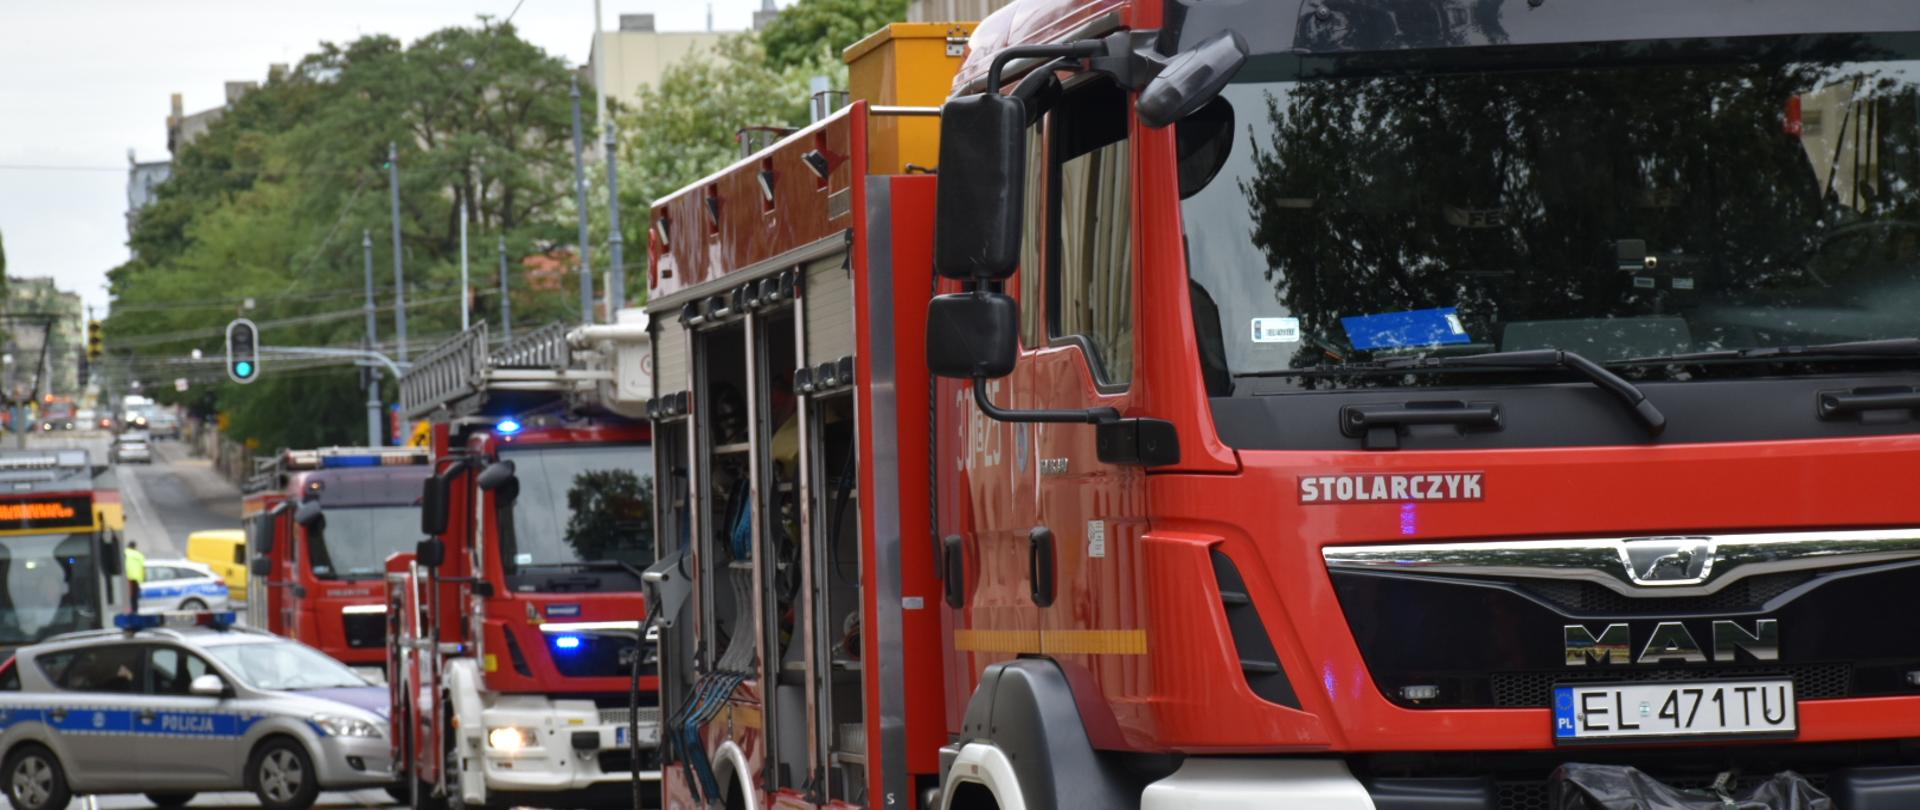 Samochody pożarnicze stojące na ulicy, w tle radiowóz policyjny